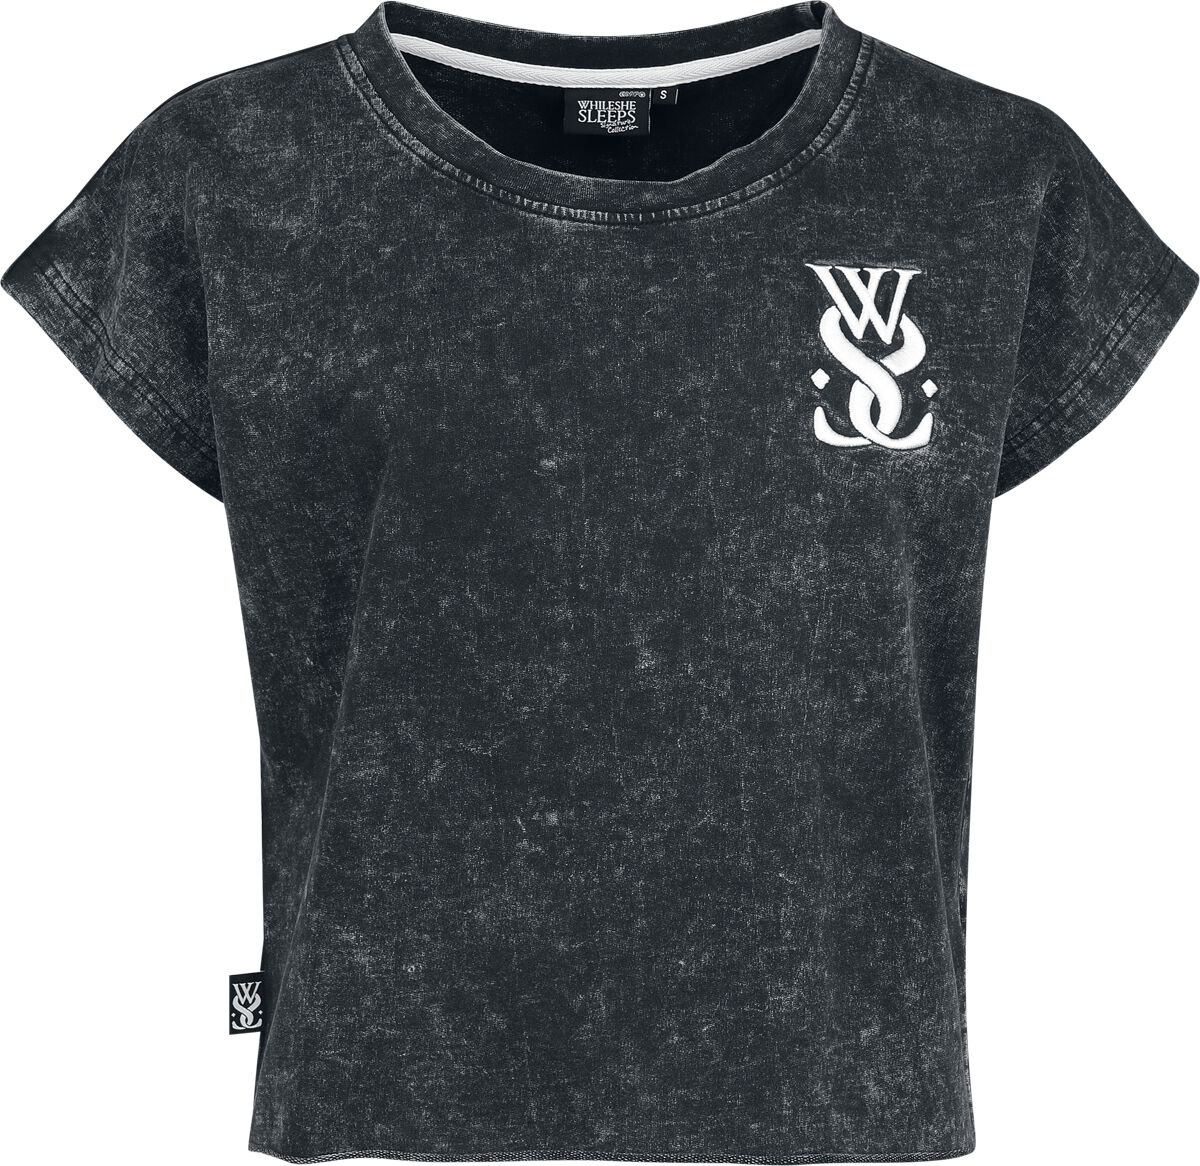 While She Sleeps T-Shirt - EMP Signature Collection - XS bis 3XL - für Damen - Größe 3XL - grau  - EMP exklusives Merchandise!